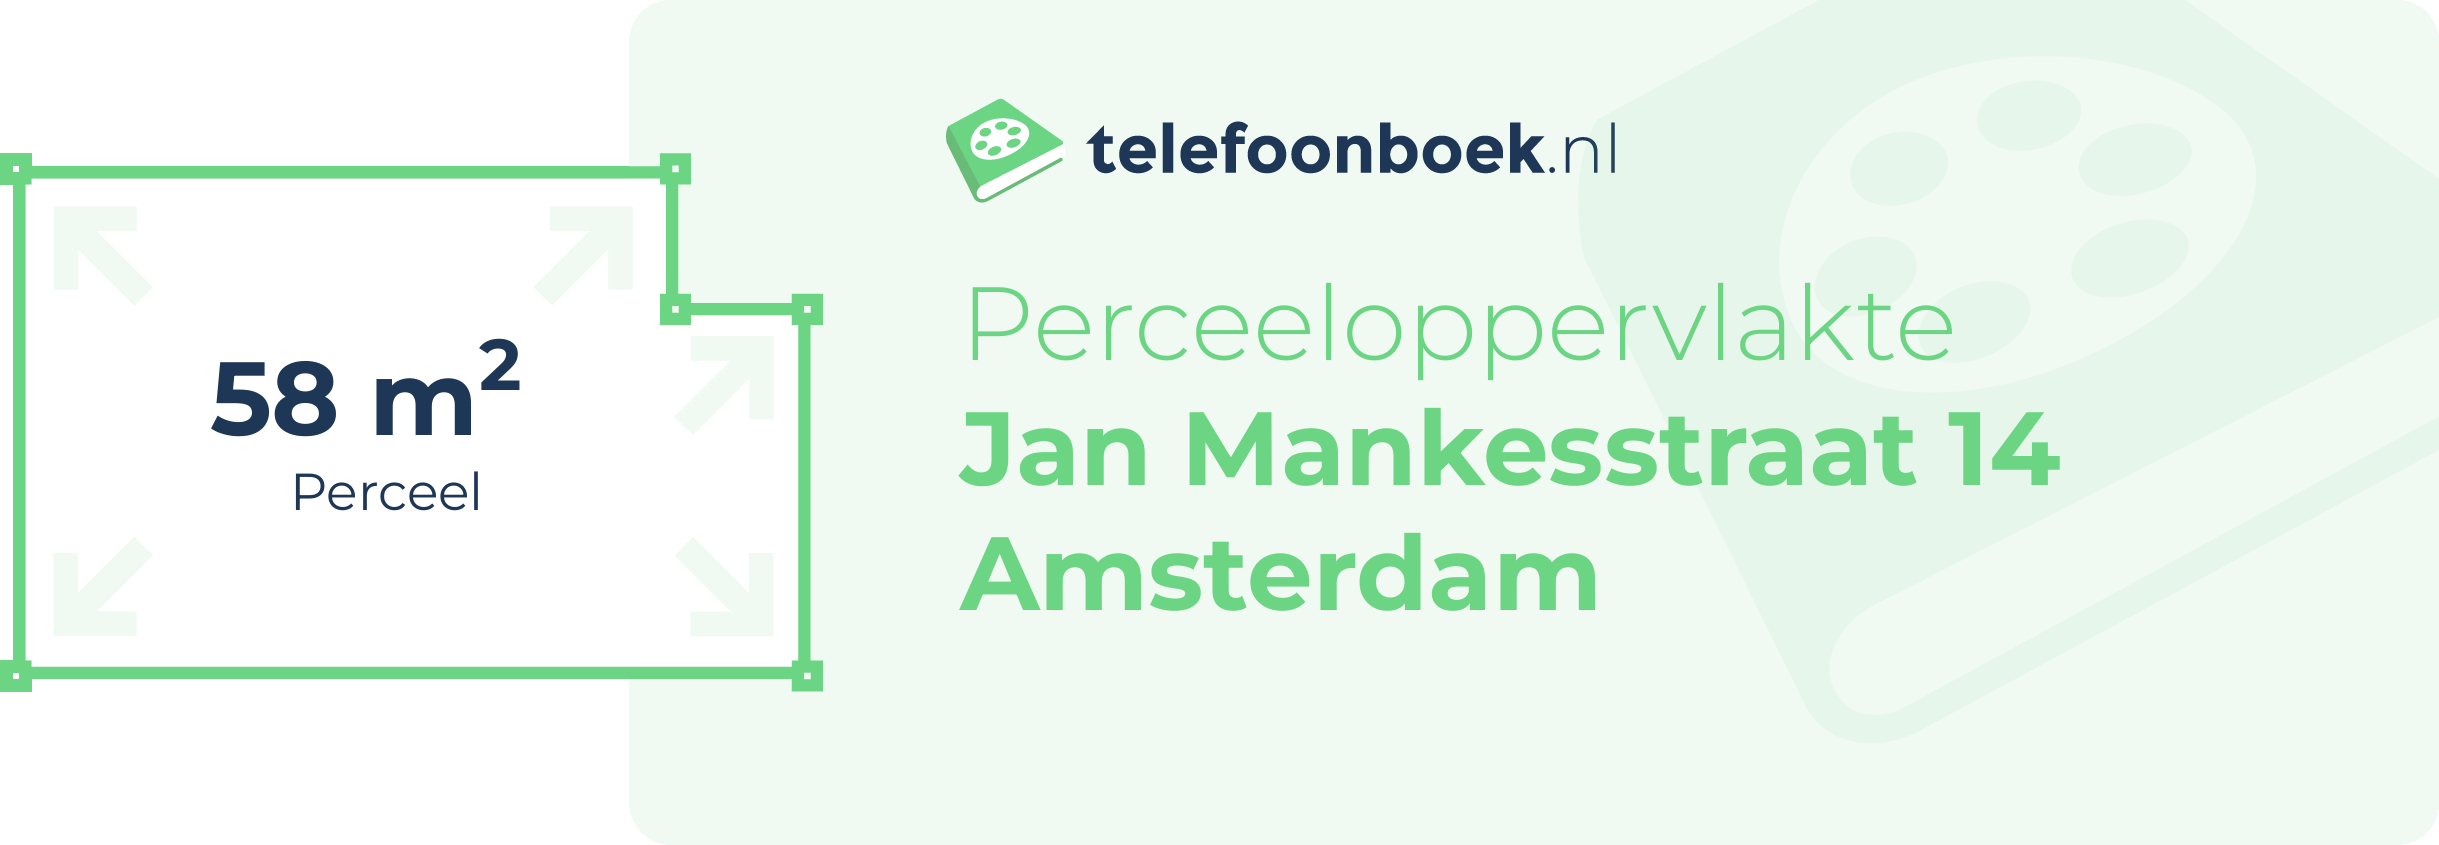 Perceeloppervlakte Jan Mankesstraat 14 Amsterdam